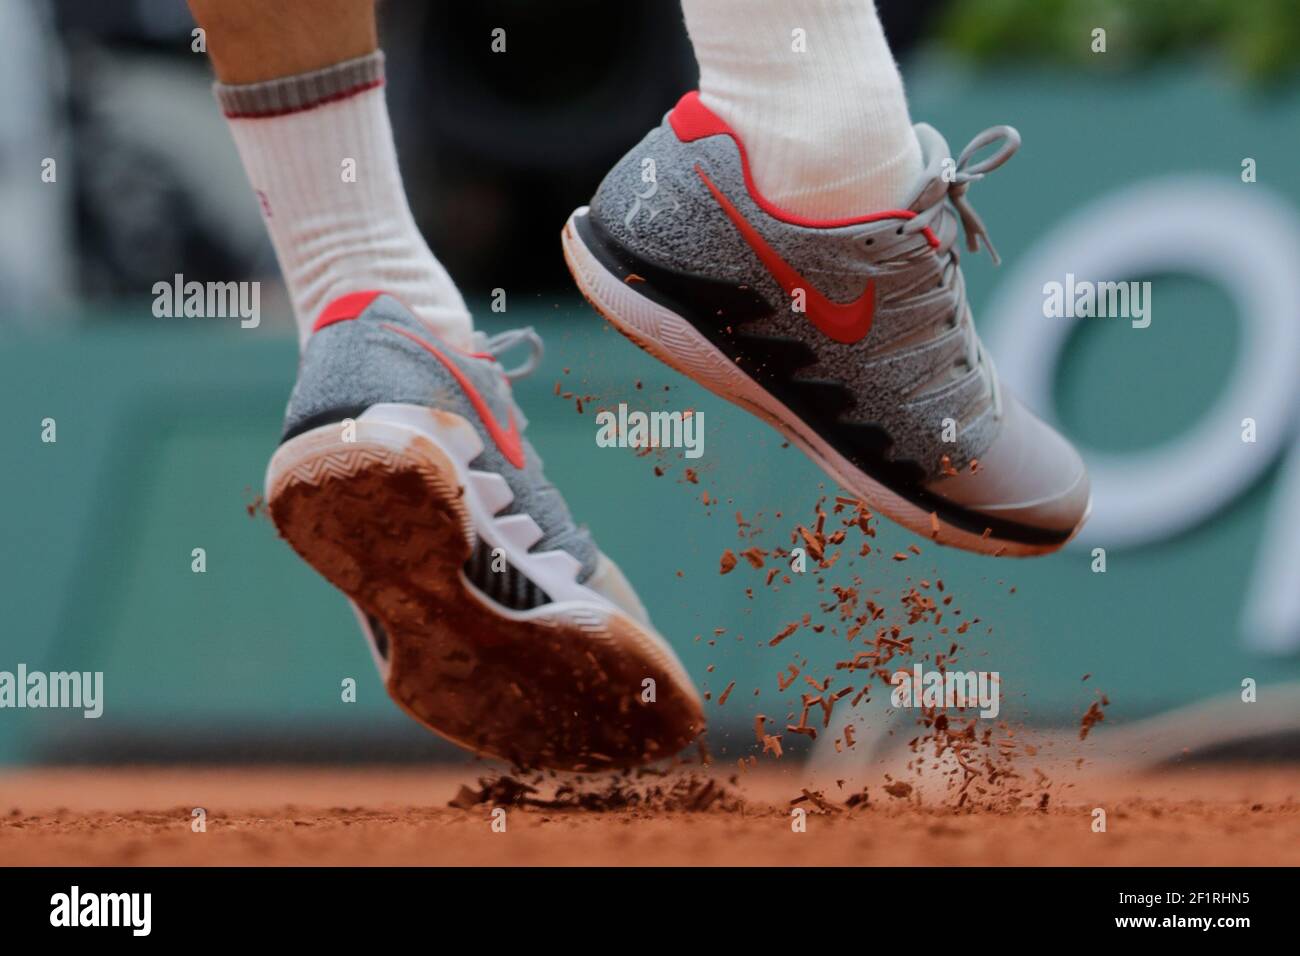 Parcial expedido cerebro Ilustración de las zapatillas Nike Air Zoom vapor 2019 de Roger FEDERER  (sui) durante el Roland-Garros 2019, Grand Slam Tennis Tournament, sorteo  masculino el 4 de junio de 2019 en el estadio